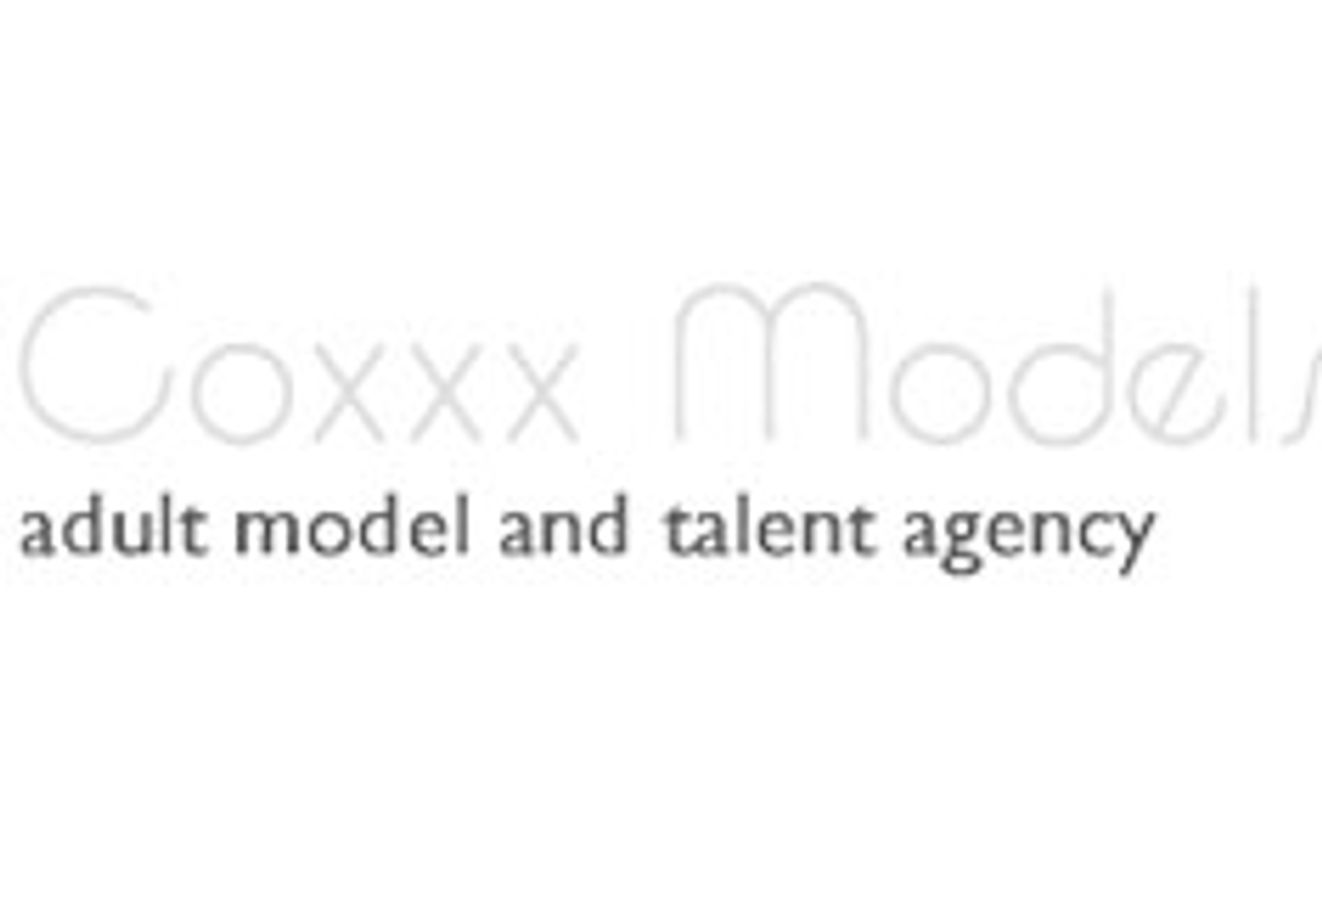 Coxxx Models